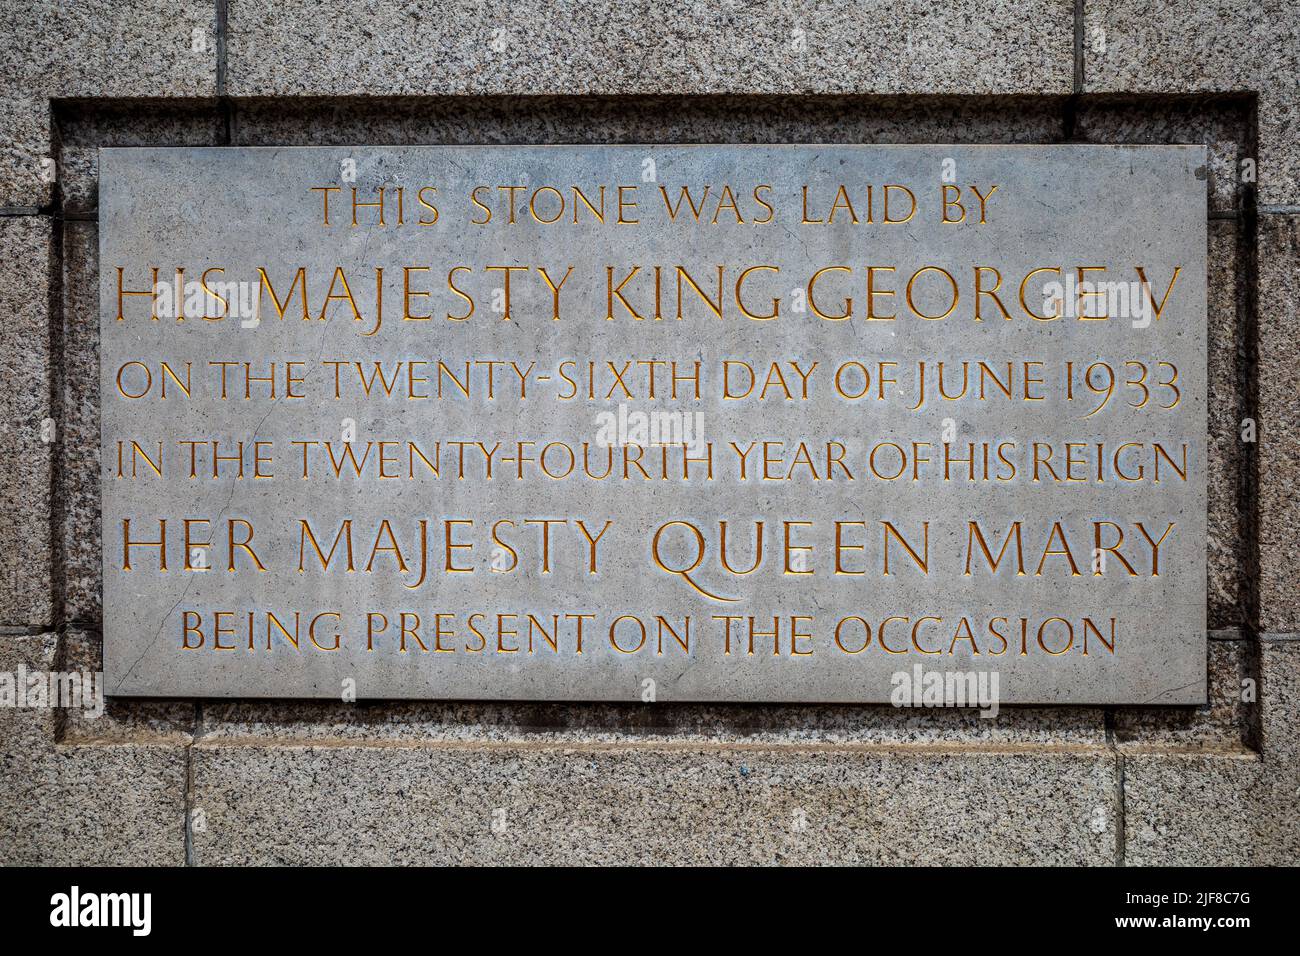 Senate House Foundation Stone University of London - der feierliche Grundstein wurde am 26. Juni 1933 von König George V. gelegt. Stockfoto